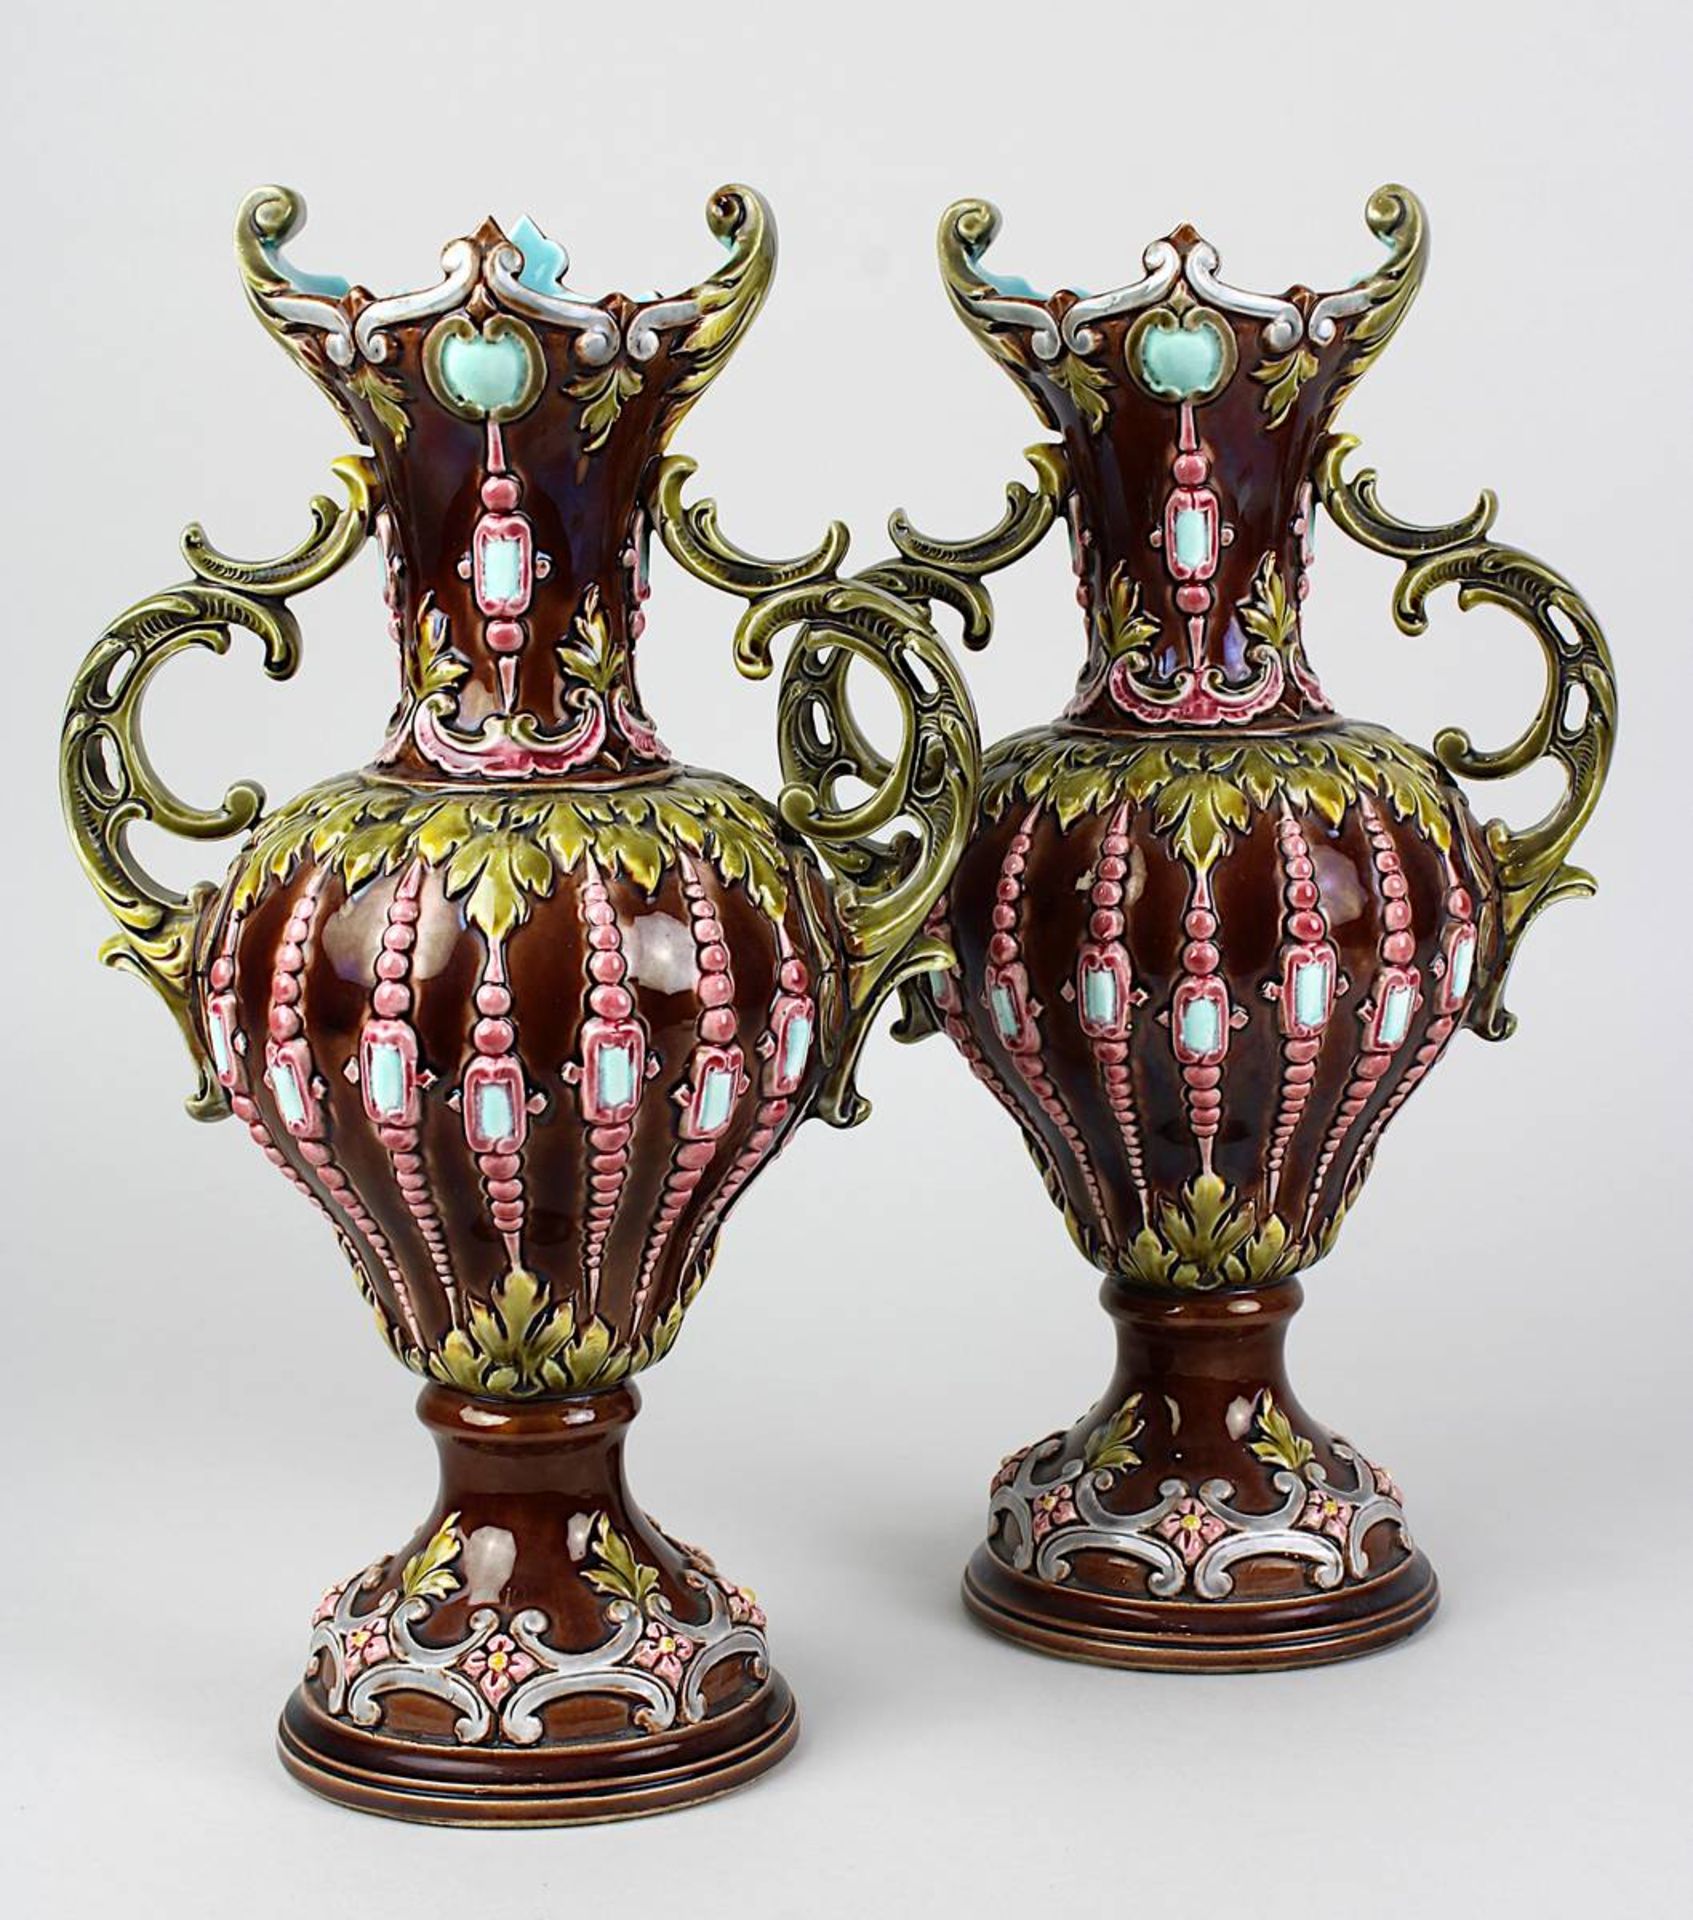 Paar Historismus-Keramikvasen mit reliefiertem floralem Dekor, Krause R. M. in Schweidnitz um